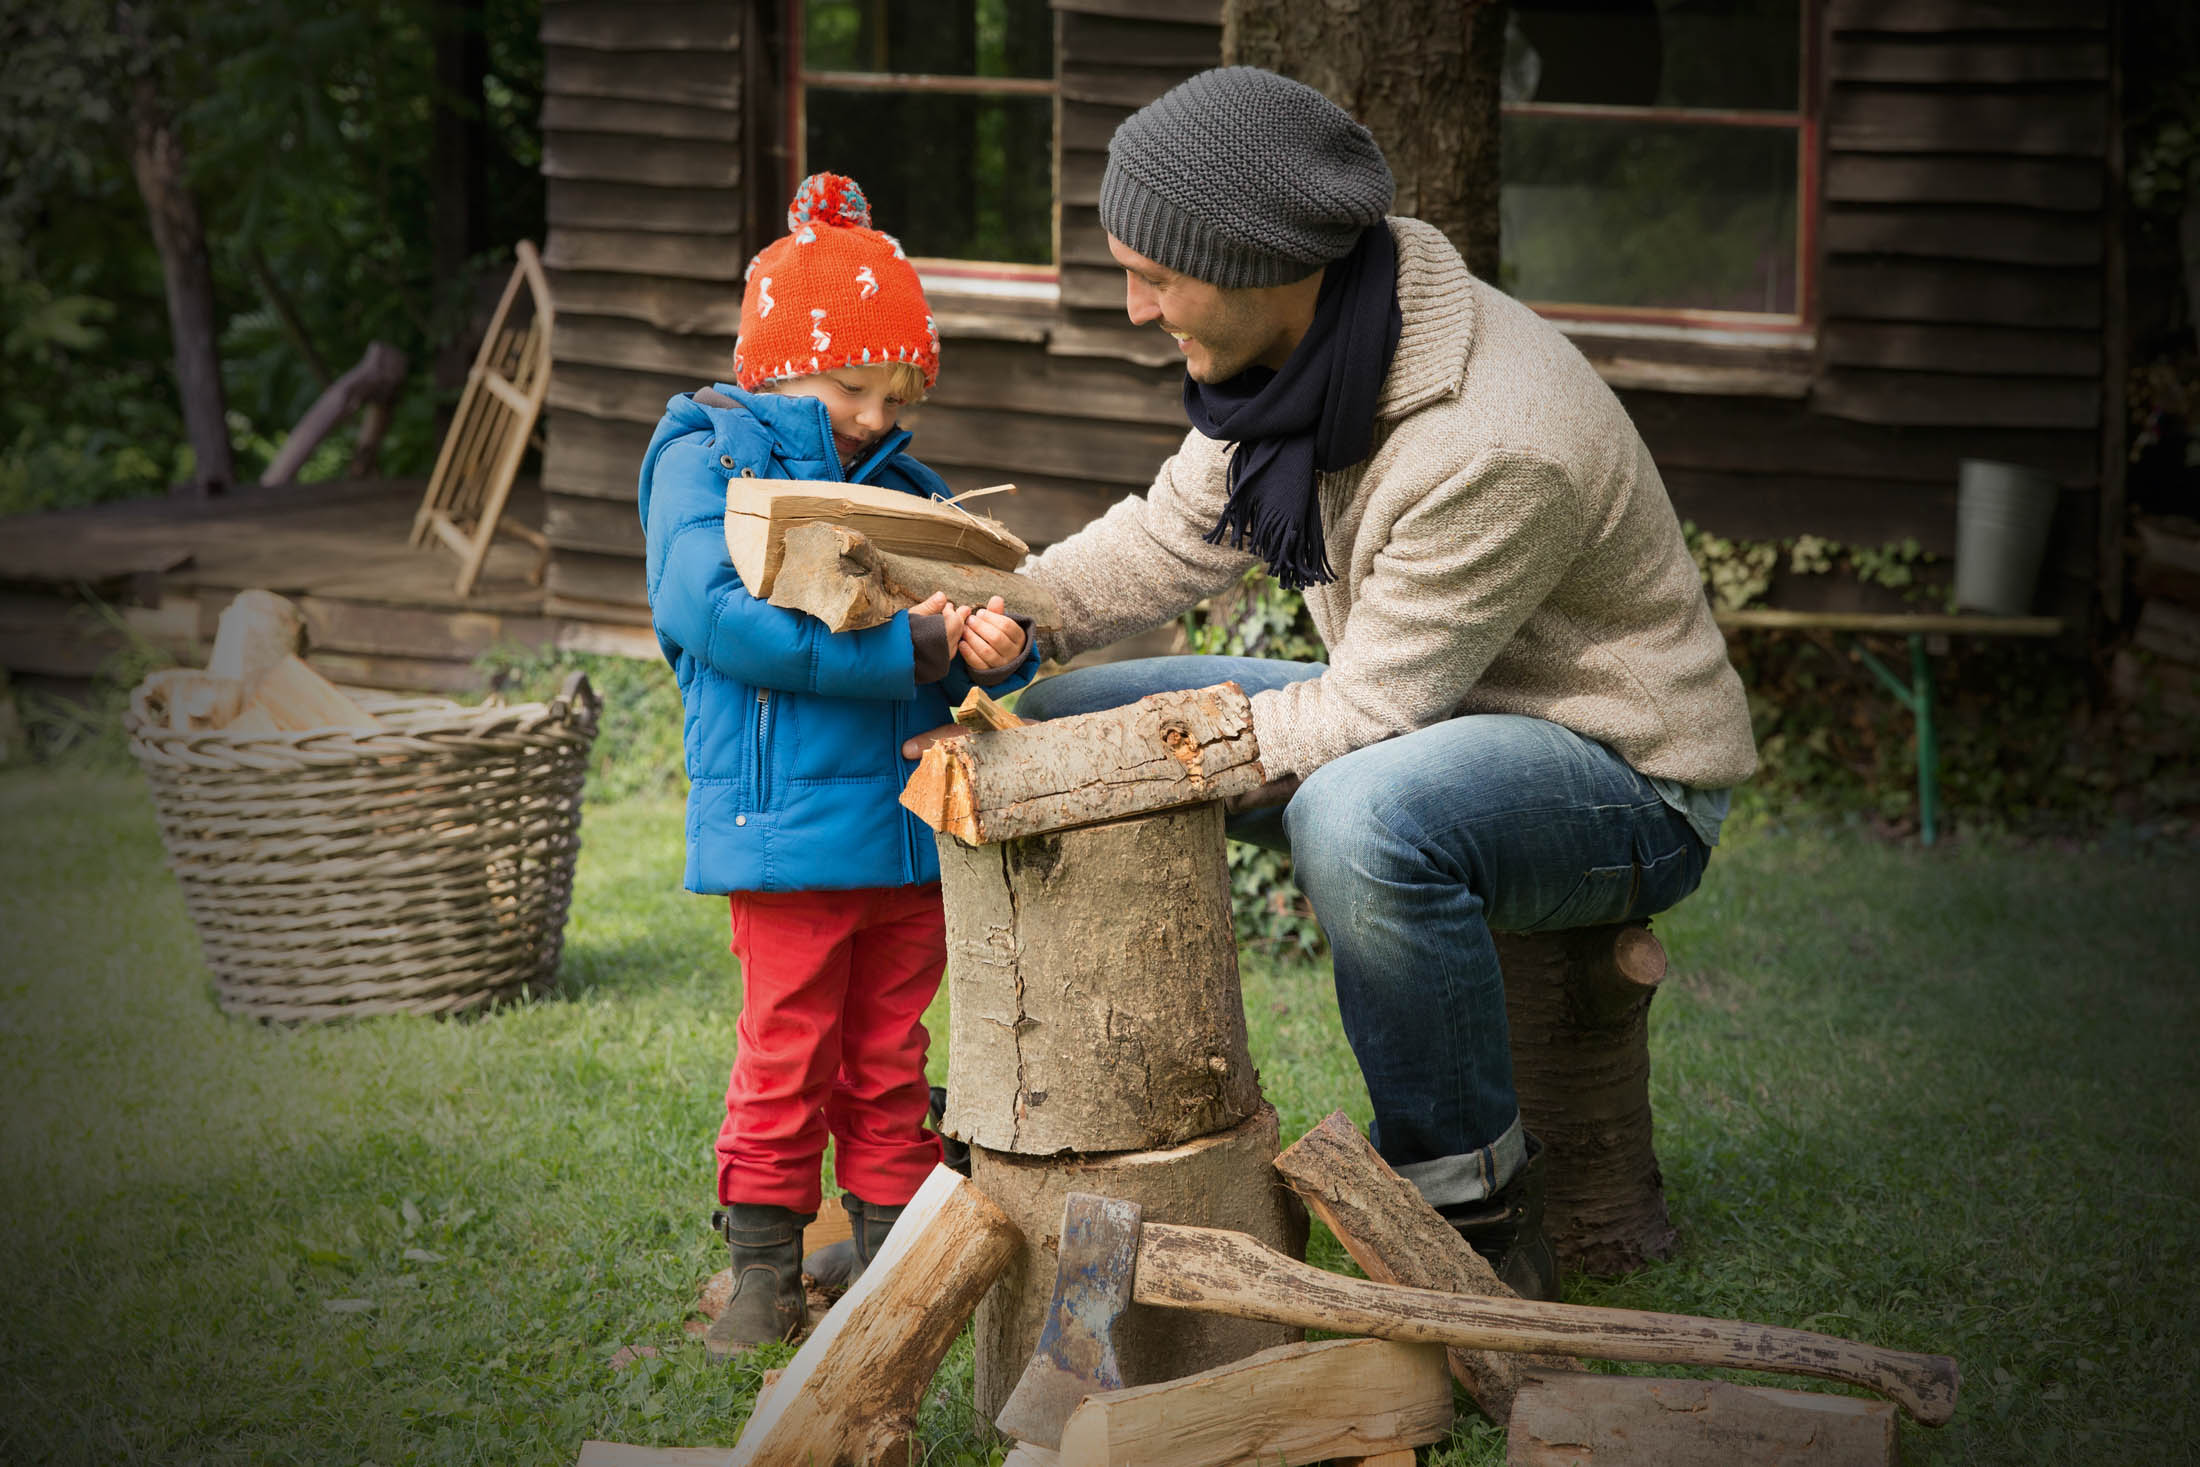 Ein Mann mit Mütze und Schal bringt einem kleinen Kind mit einer leuchtend orangefarbenen Mütze bei, wie man mit einer kleinen Axt Holz hackt. In der Nähe einer rustikalen Holzhütte und eines Korbes mit Holzstämmen. © Fotografie Tomas Rodriguez